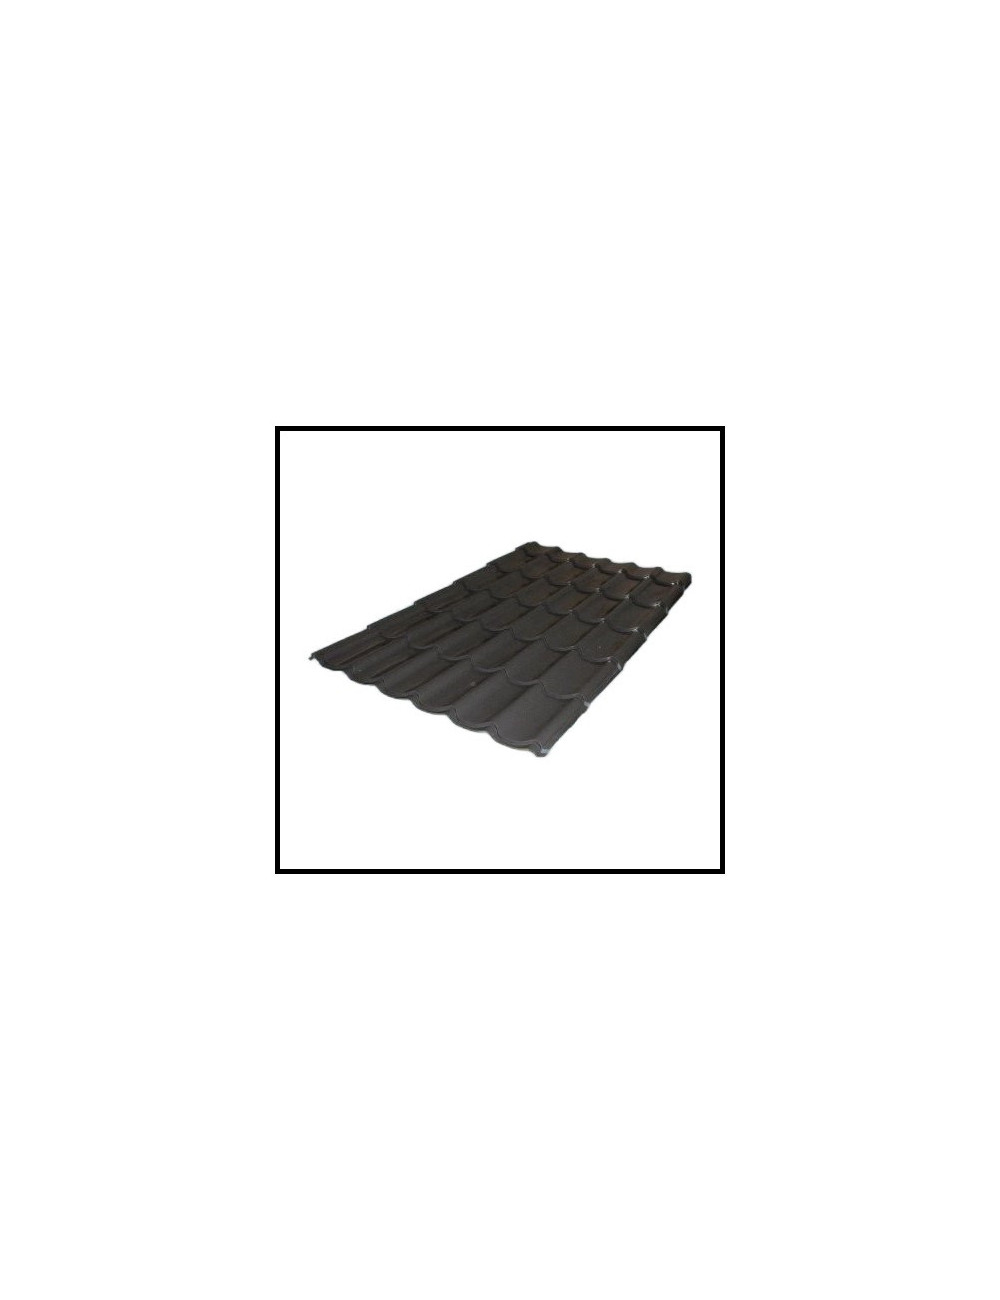 Tôle de toiture Bricotuile Noir 1900X980